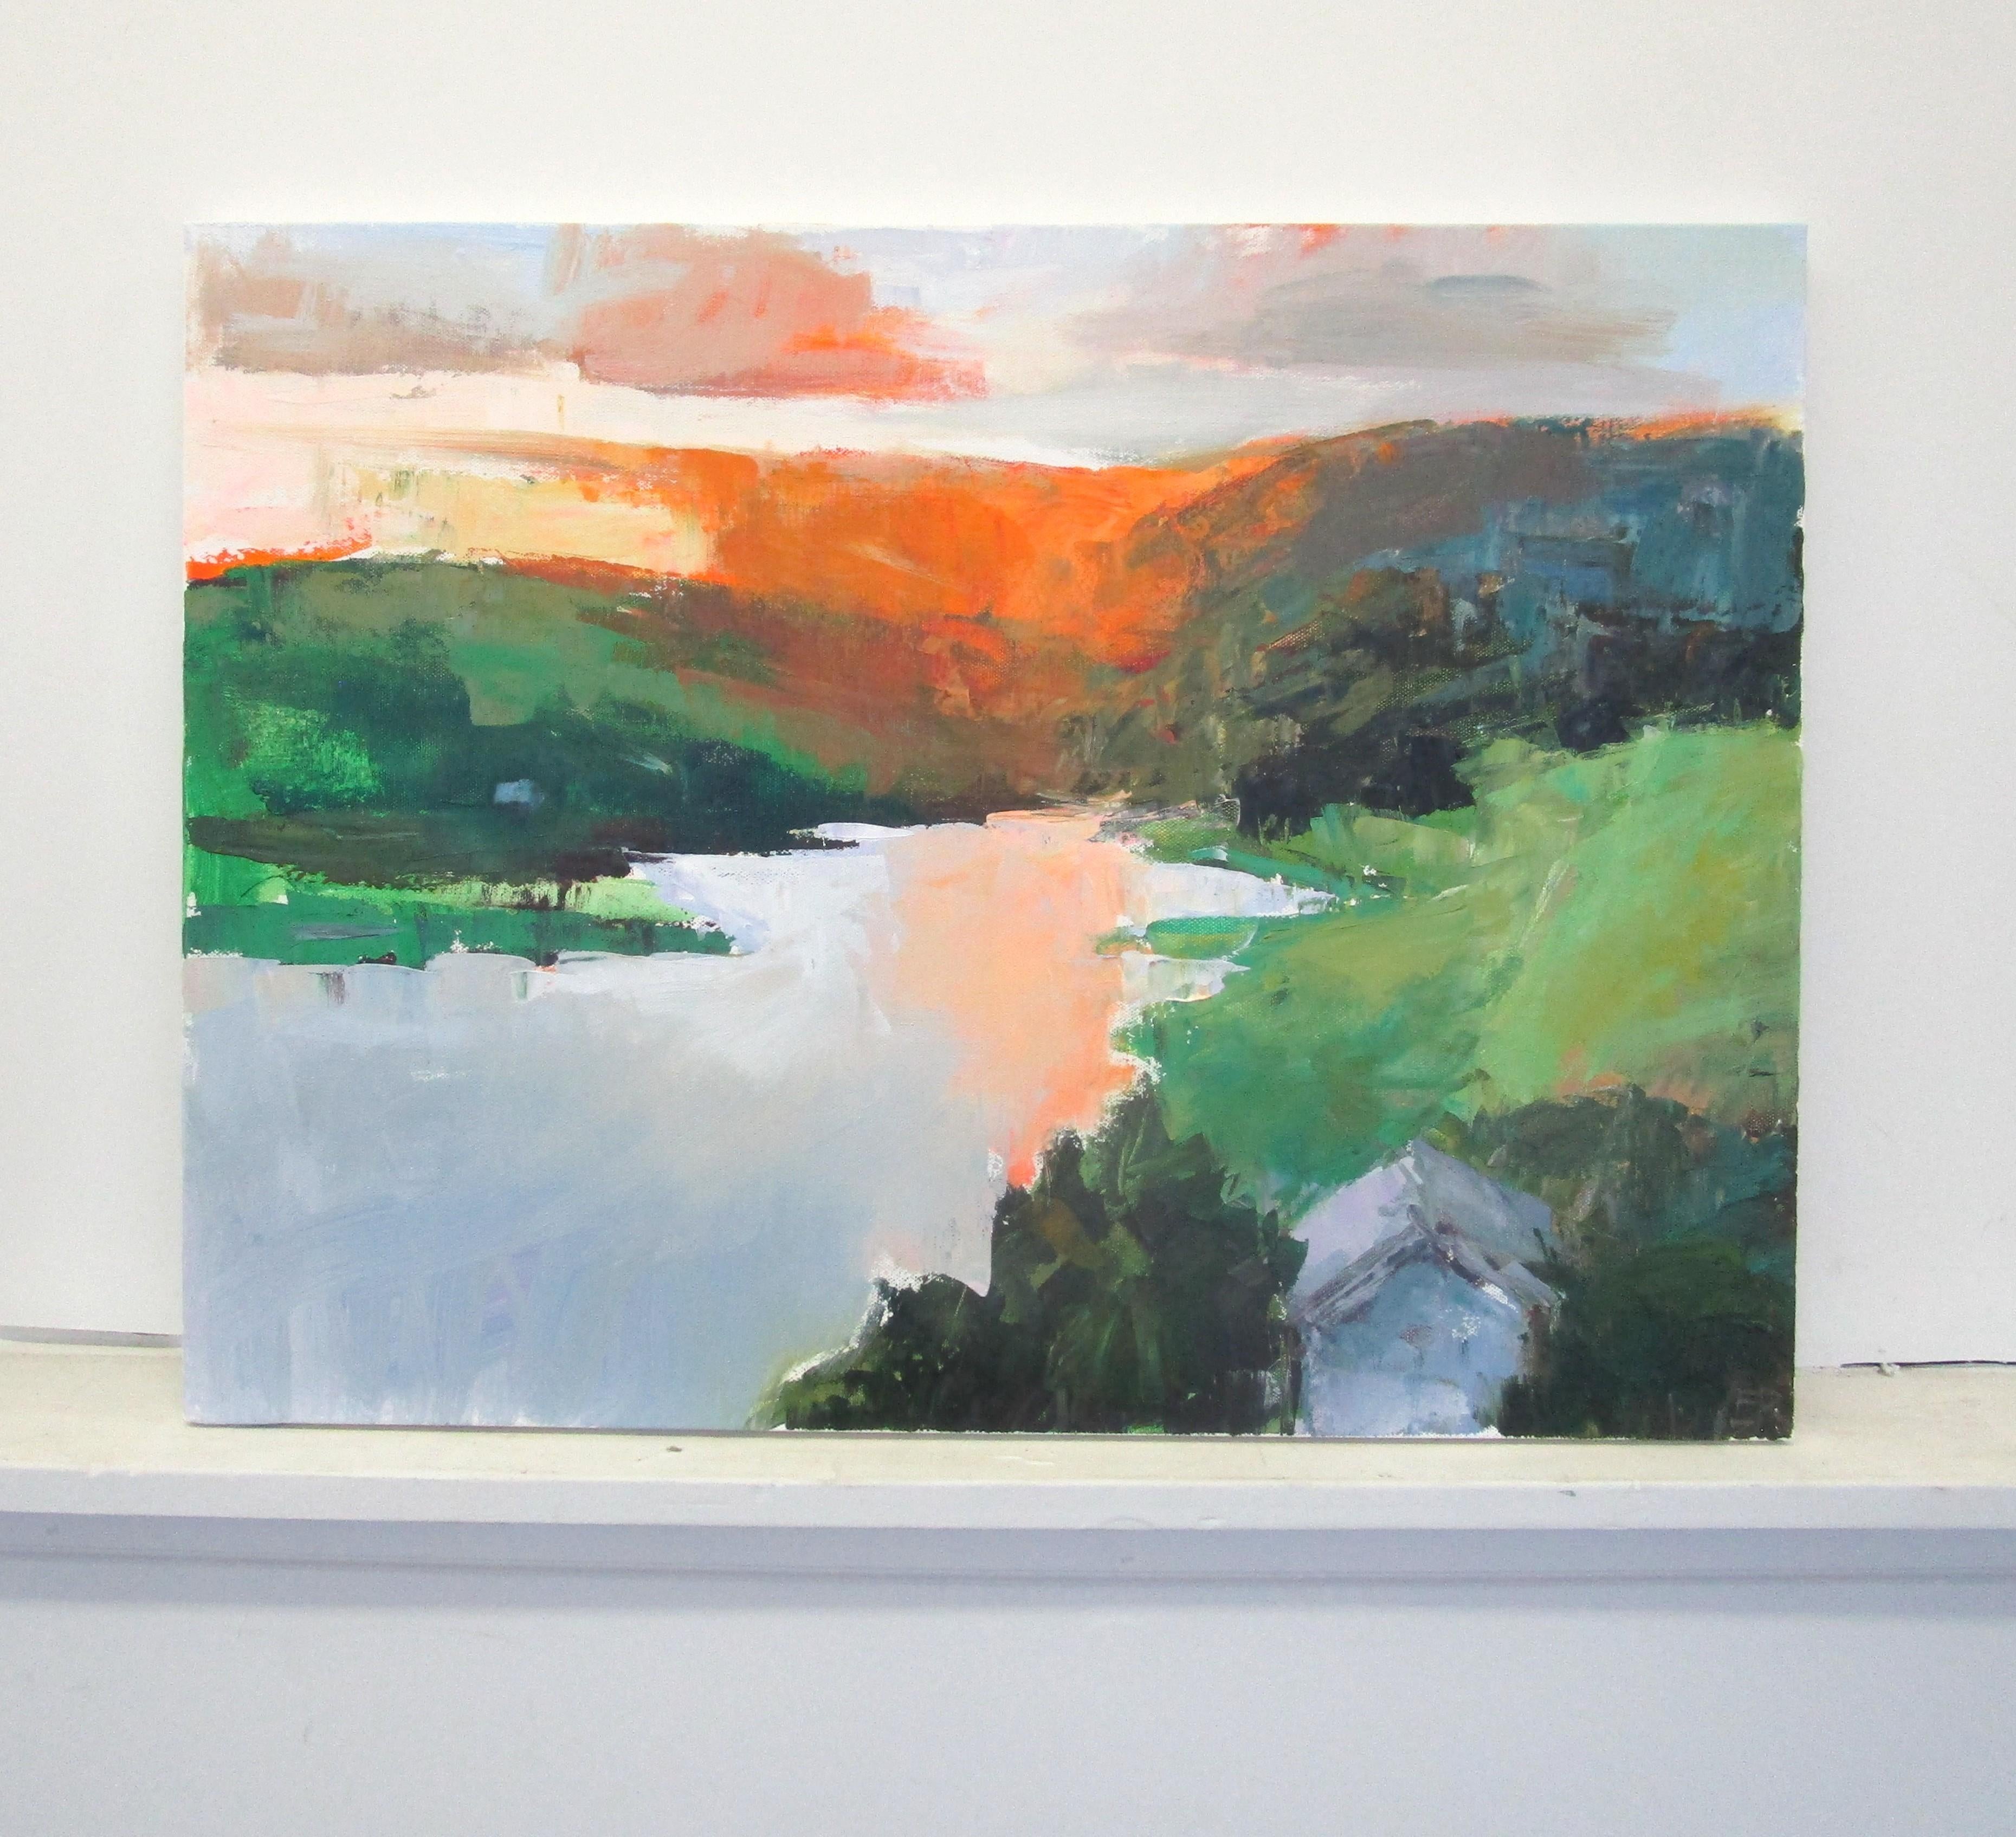 <p>Kommentare des Künstlers<br>Die Künstlerin Janet Dyer malt einen expressionistischen Sonnenuntergang hinter Bergen am See. Sie fängt das warme orangefarbene Glühen der letzten Momente des Abstiegs ein. 